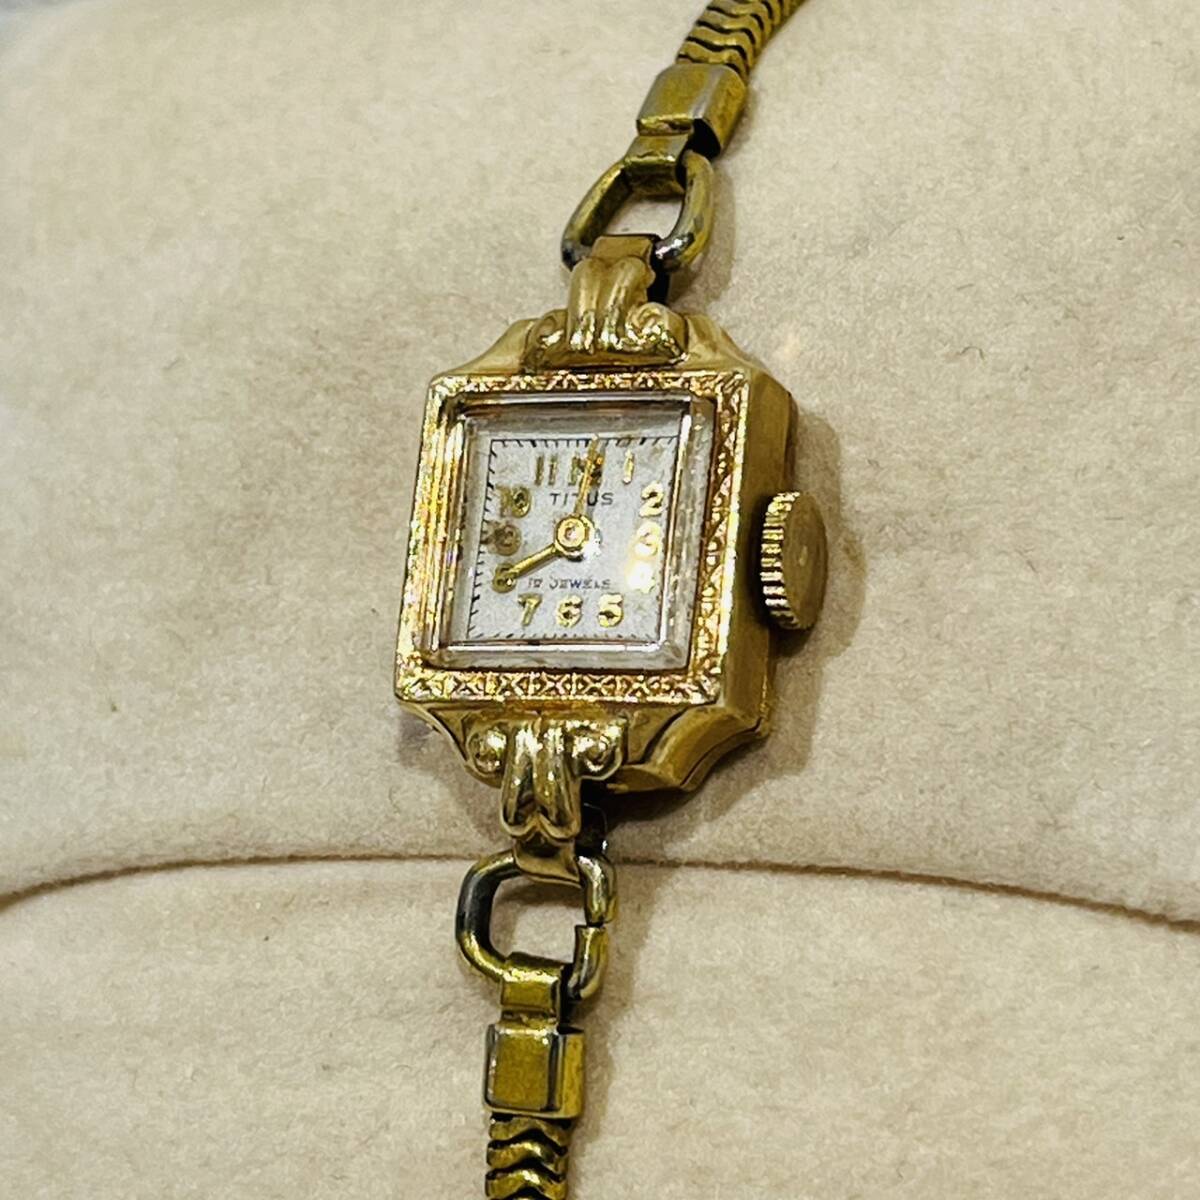 【AMT-10936】TITUS タイタス 14K 585 刻印あり 17 JEWELS 手巻き レディース 腕時計 アンティーク コレクション オールド 不動品 ジャンクの画像8